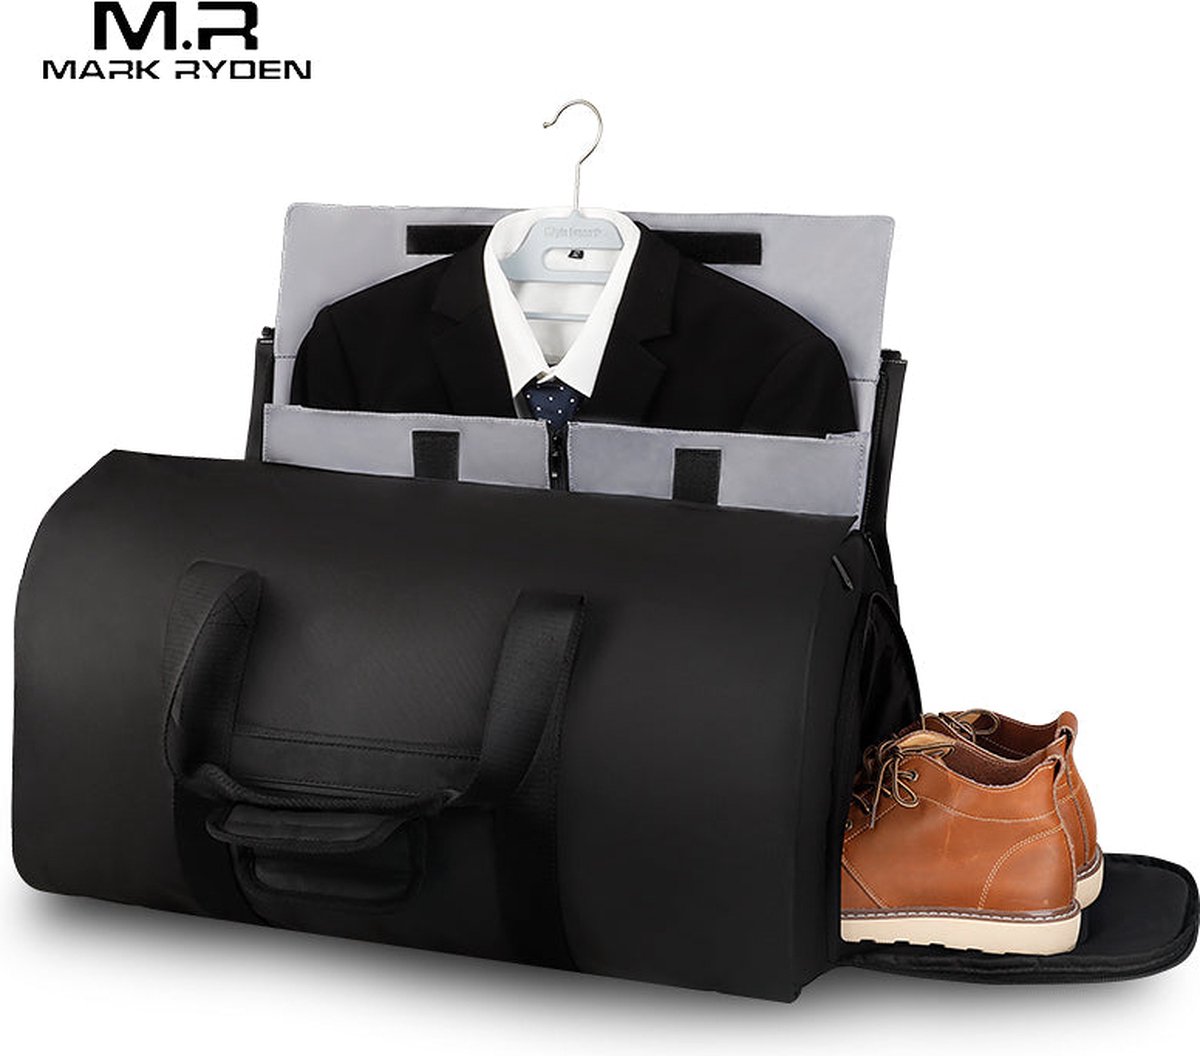 Mark Ryden reistas – weekendtas – reistassen – tas voor dames en heren – reistas handbagage – weekend tas – duffel bag waterdicht – kostuumtas